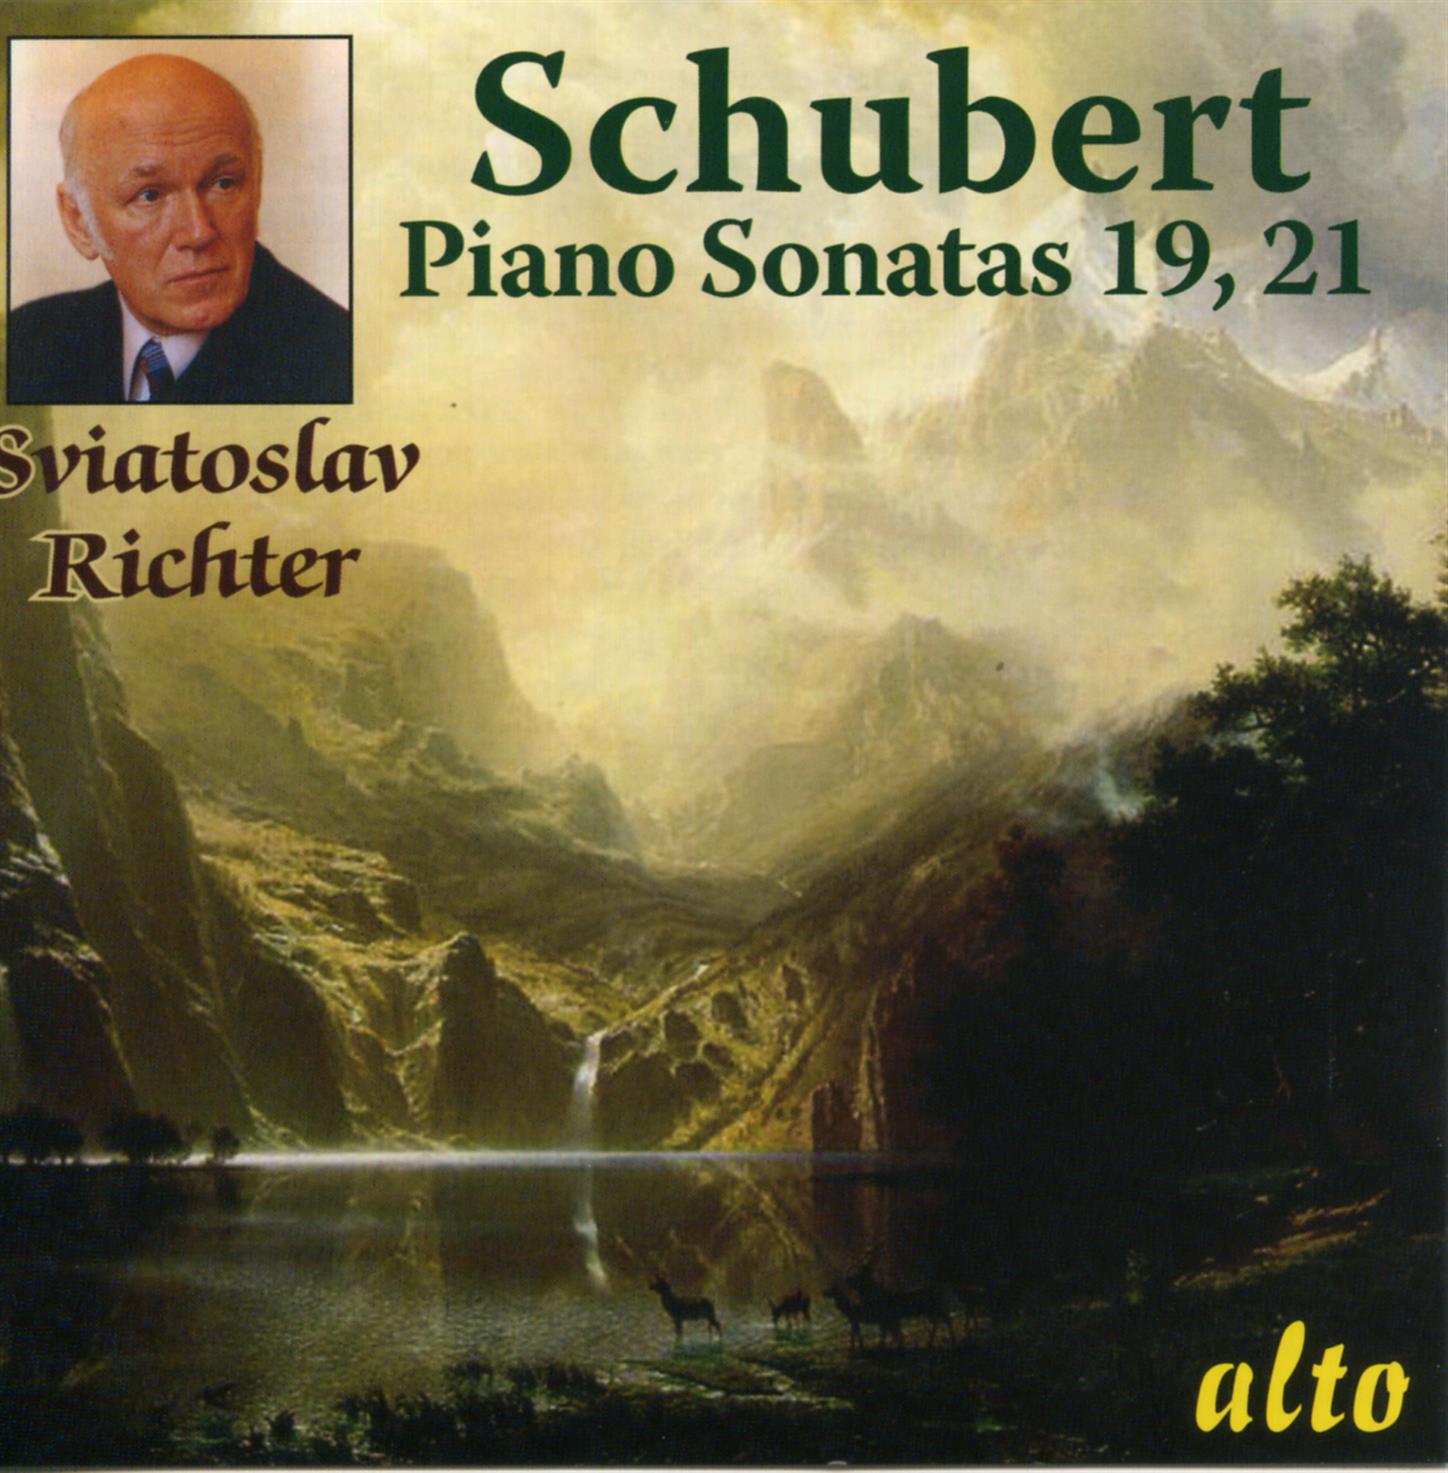 Piano Sonata No. 21 in B flat major, Op.posth. (D960): III. Scherzo. Allegro vivace con delicatezza